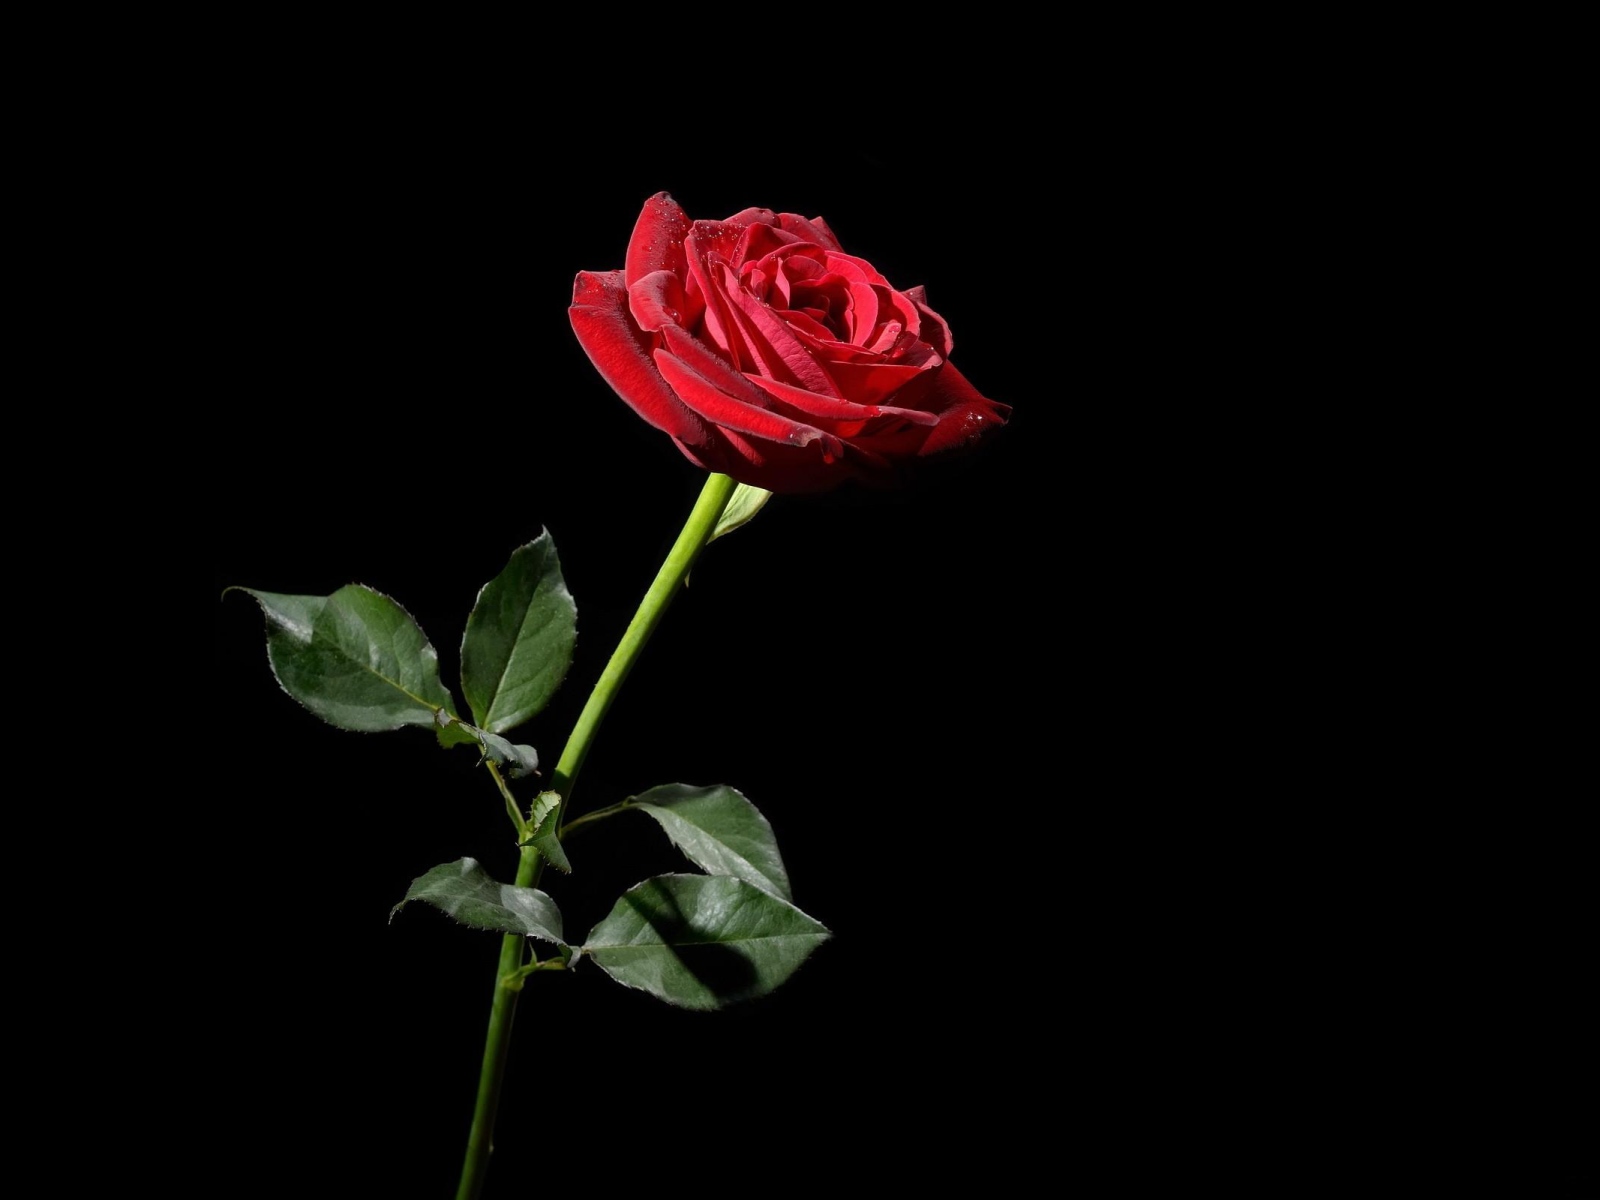 Wallpaper Rose Red Flower Black